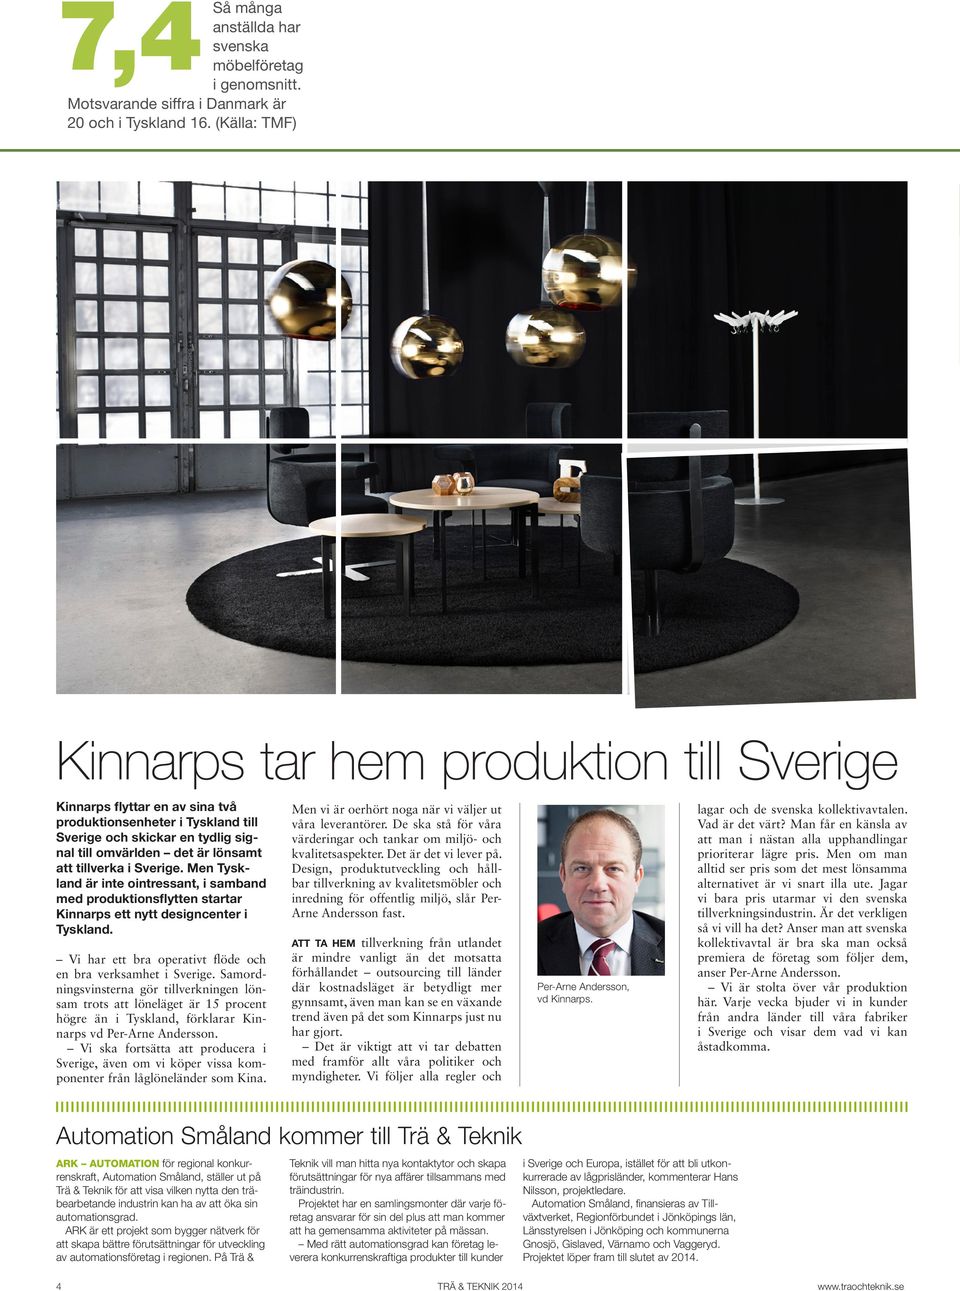 tillverka i Sverige. Men Tyskland är inte ointressant, i samband med produktionsflytten startar Kinnarps ett nytt designcenter i Tyskland.